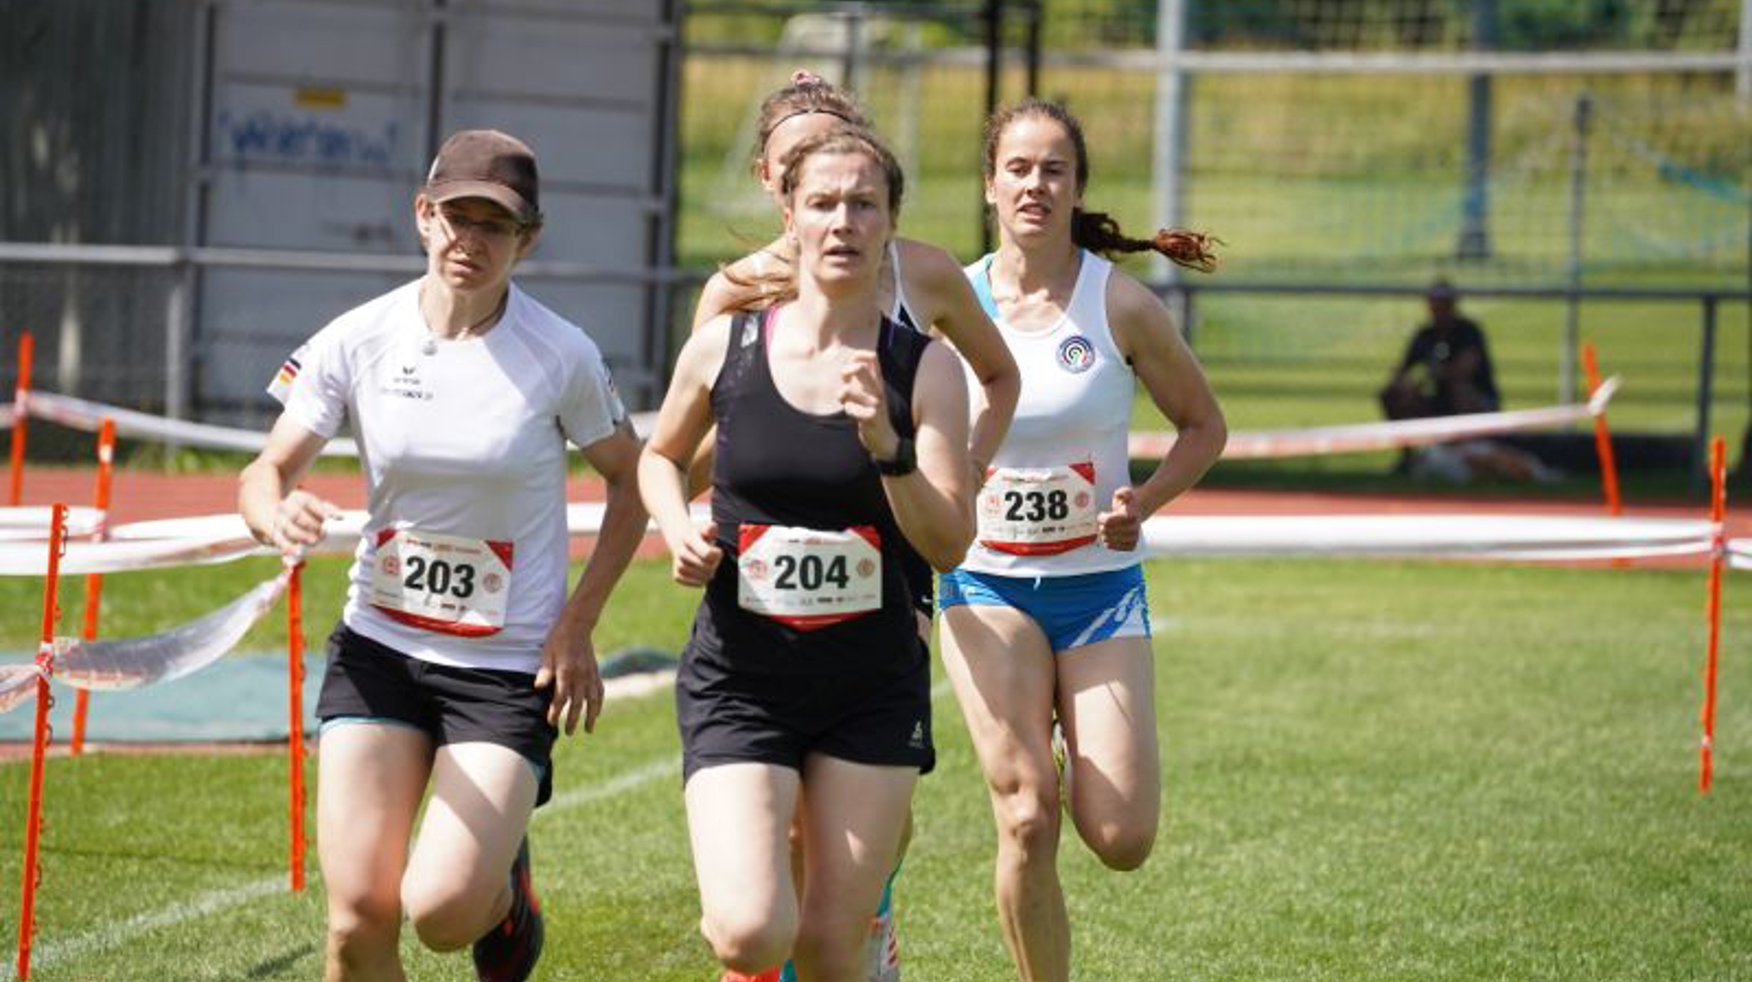 Frauen rennen.JPG